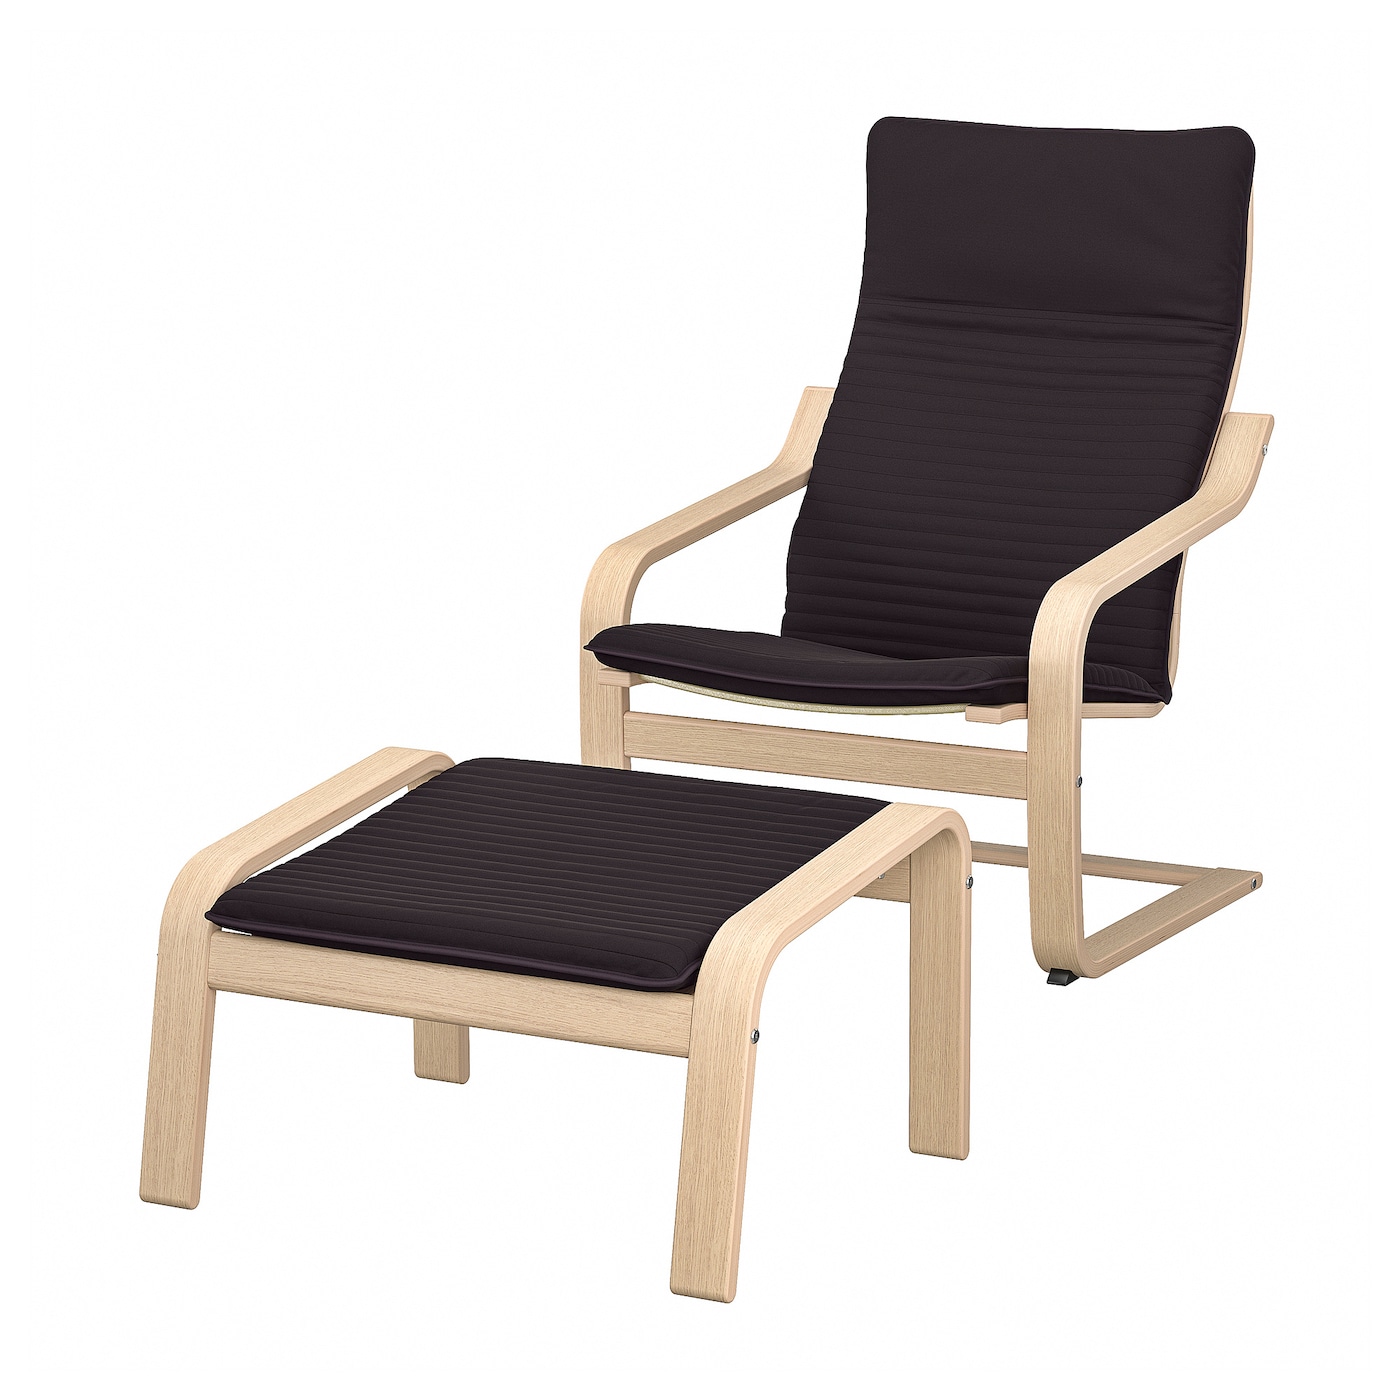 ПОЭНГ Кресло и подставка для ног, дубовый шпон светлый/Книса черный POÄNG IKEA